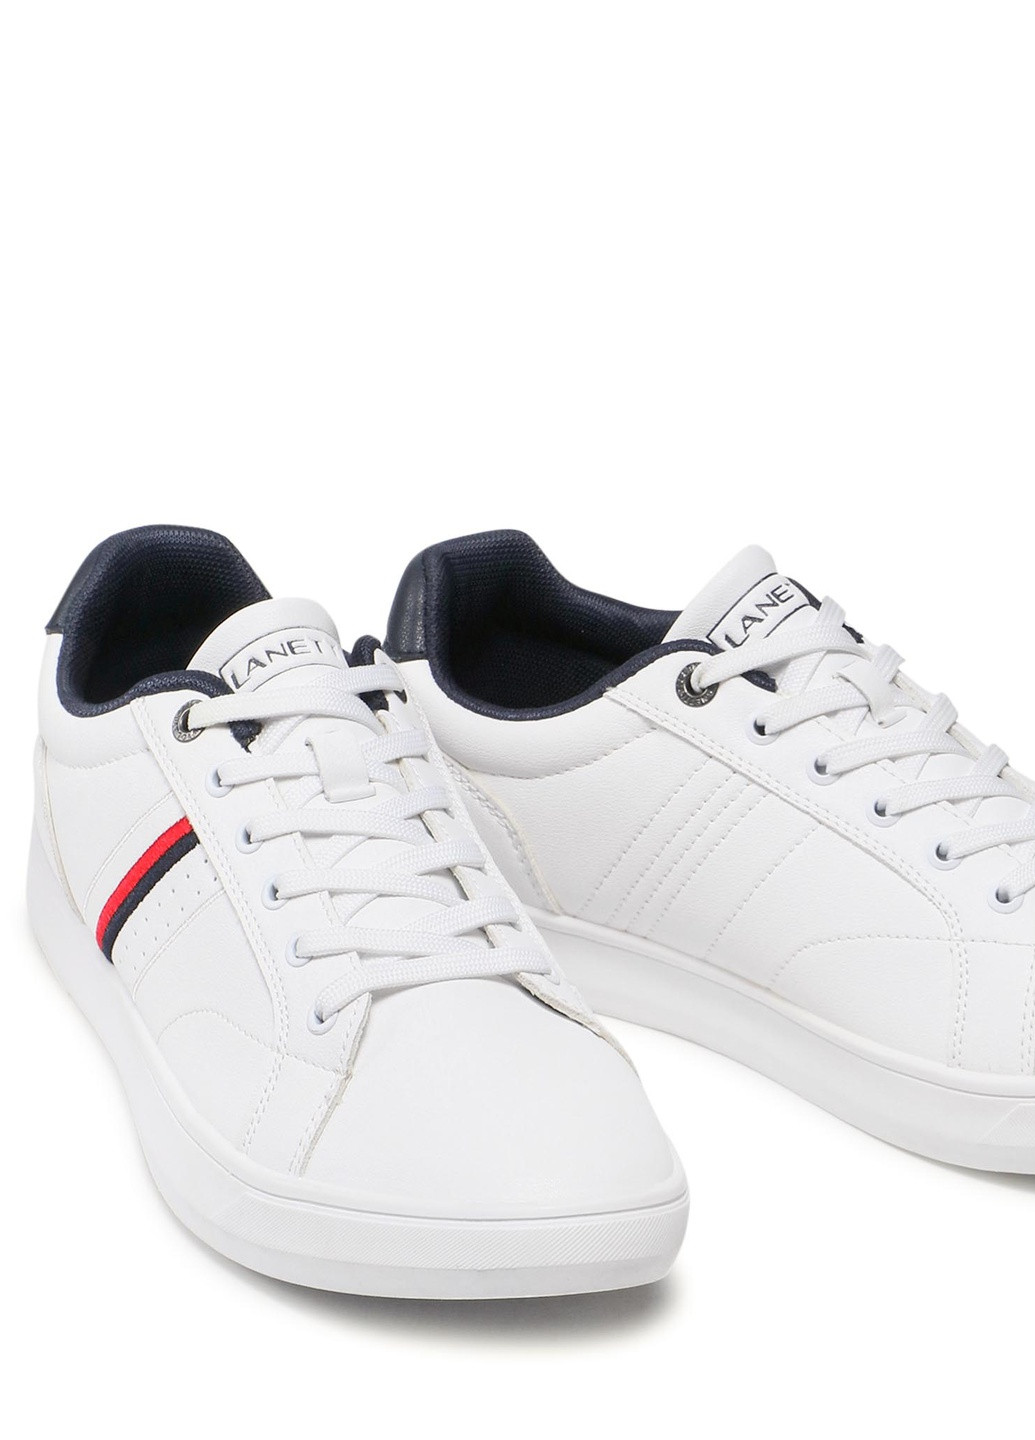 Белые осенние кроссовки mp07-01496-01 Lanetti